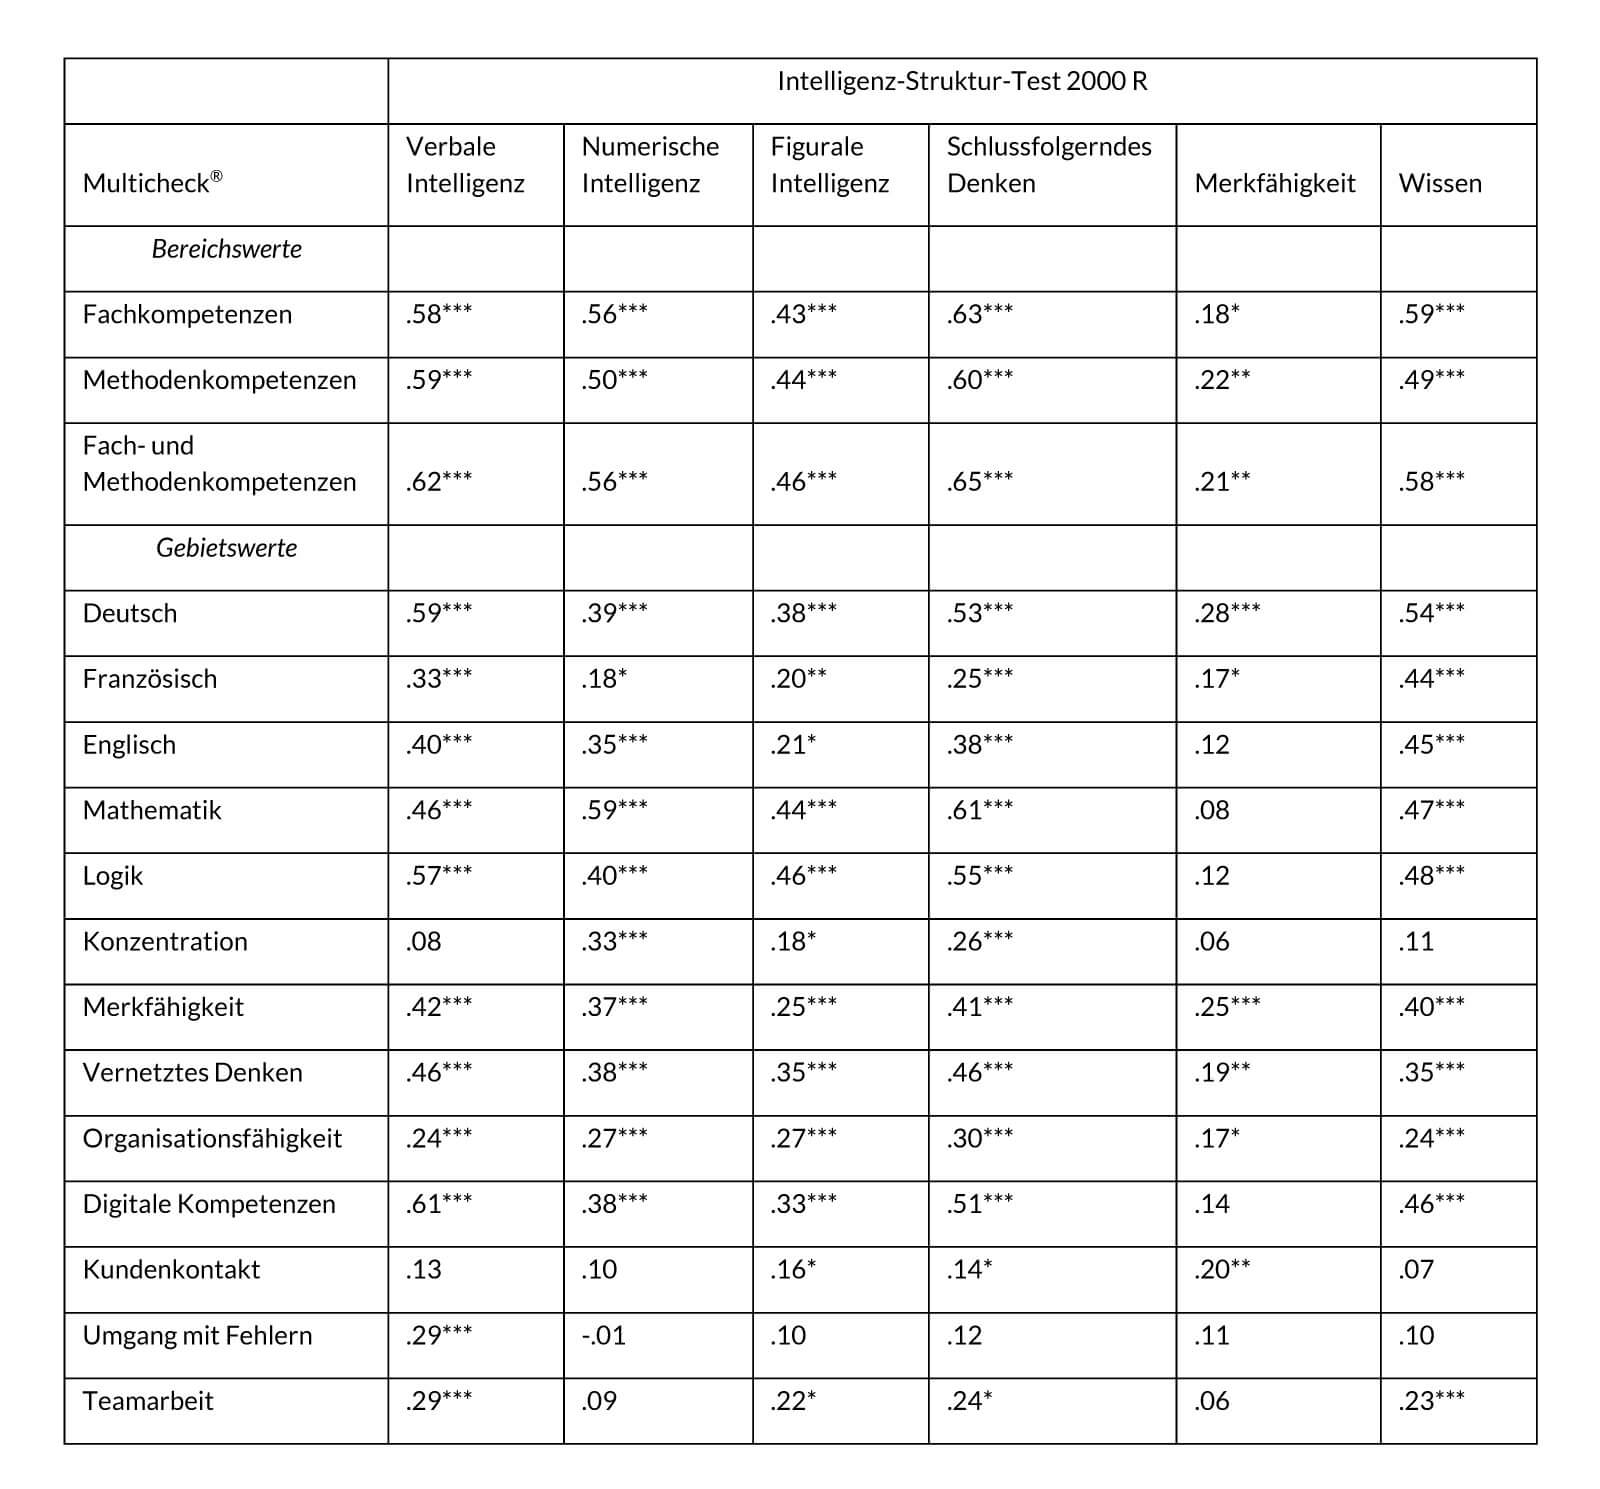 Tabelle V3. Korrelationen zwischen dem Multicheck® Wirtschaft und Administration und dem I-S-T 2000 R (Liepmann et al., 2007)